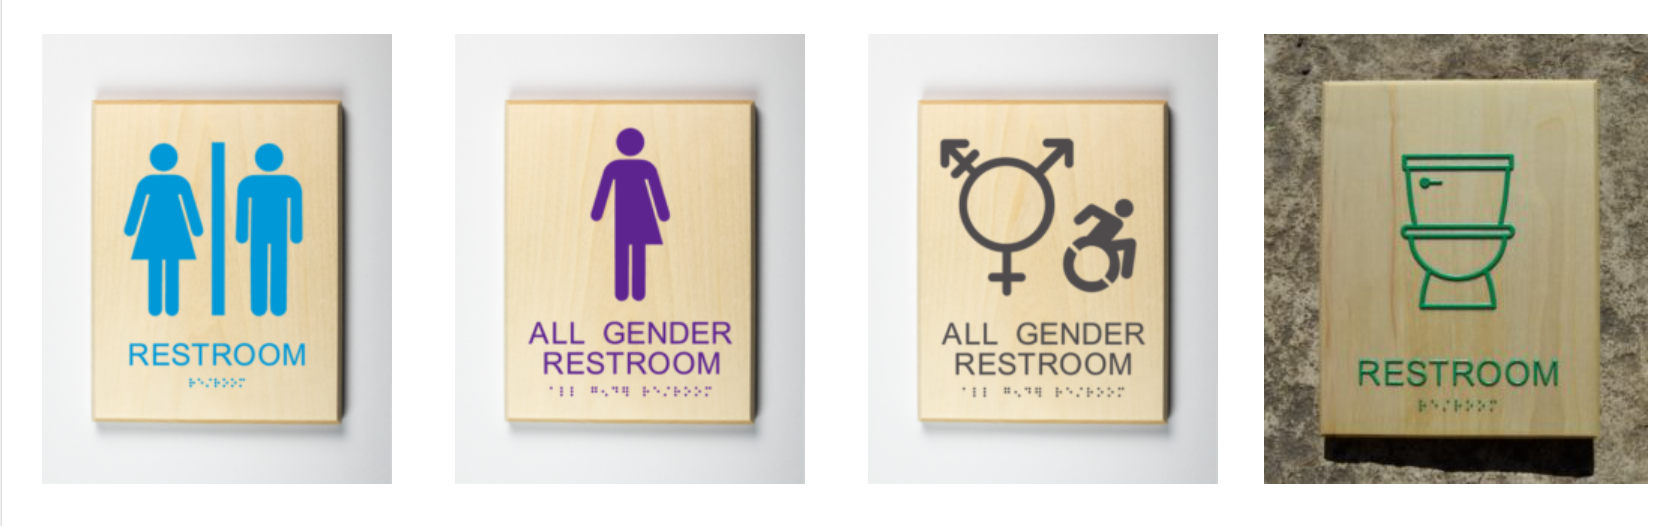 All Gender Restroom Sign options